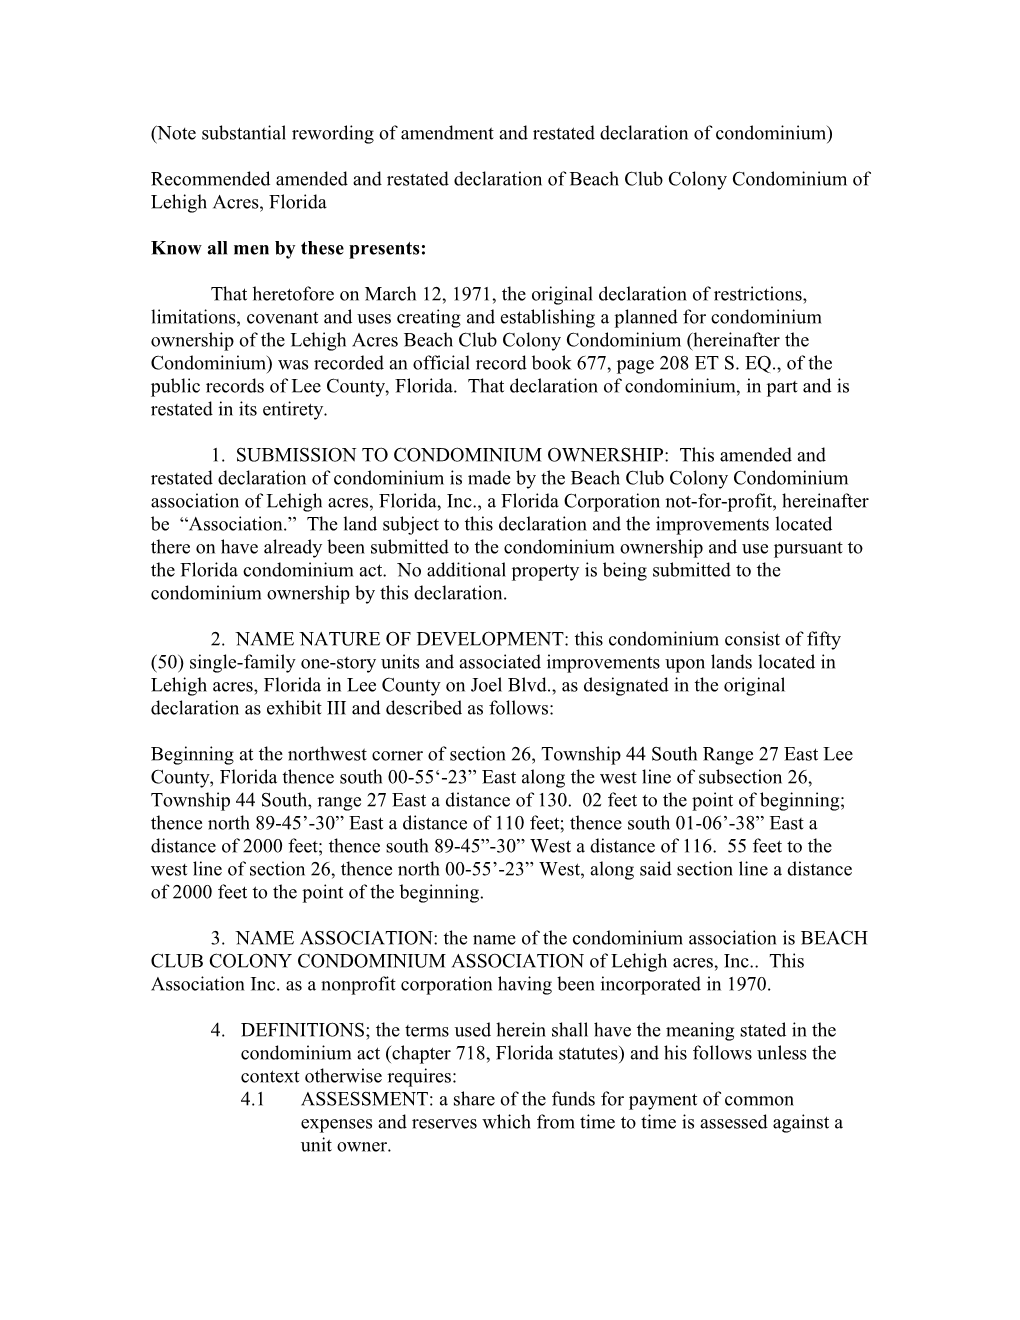 Note Substantial Rewording of Amendment and Restated Declaration of Condominium